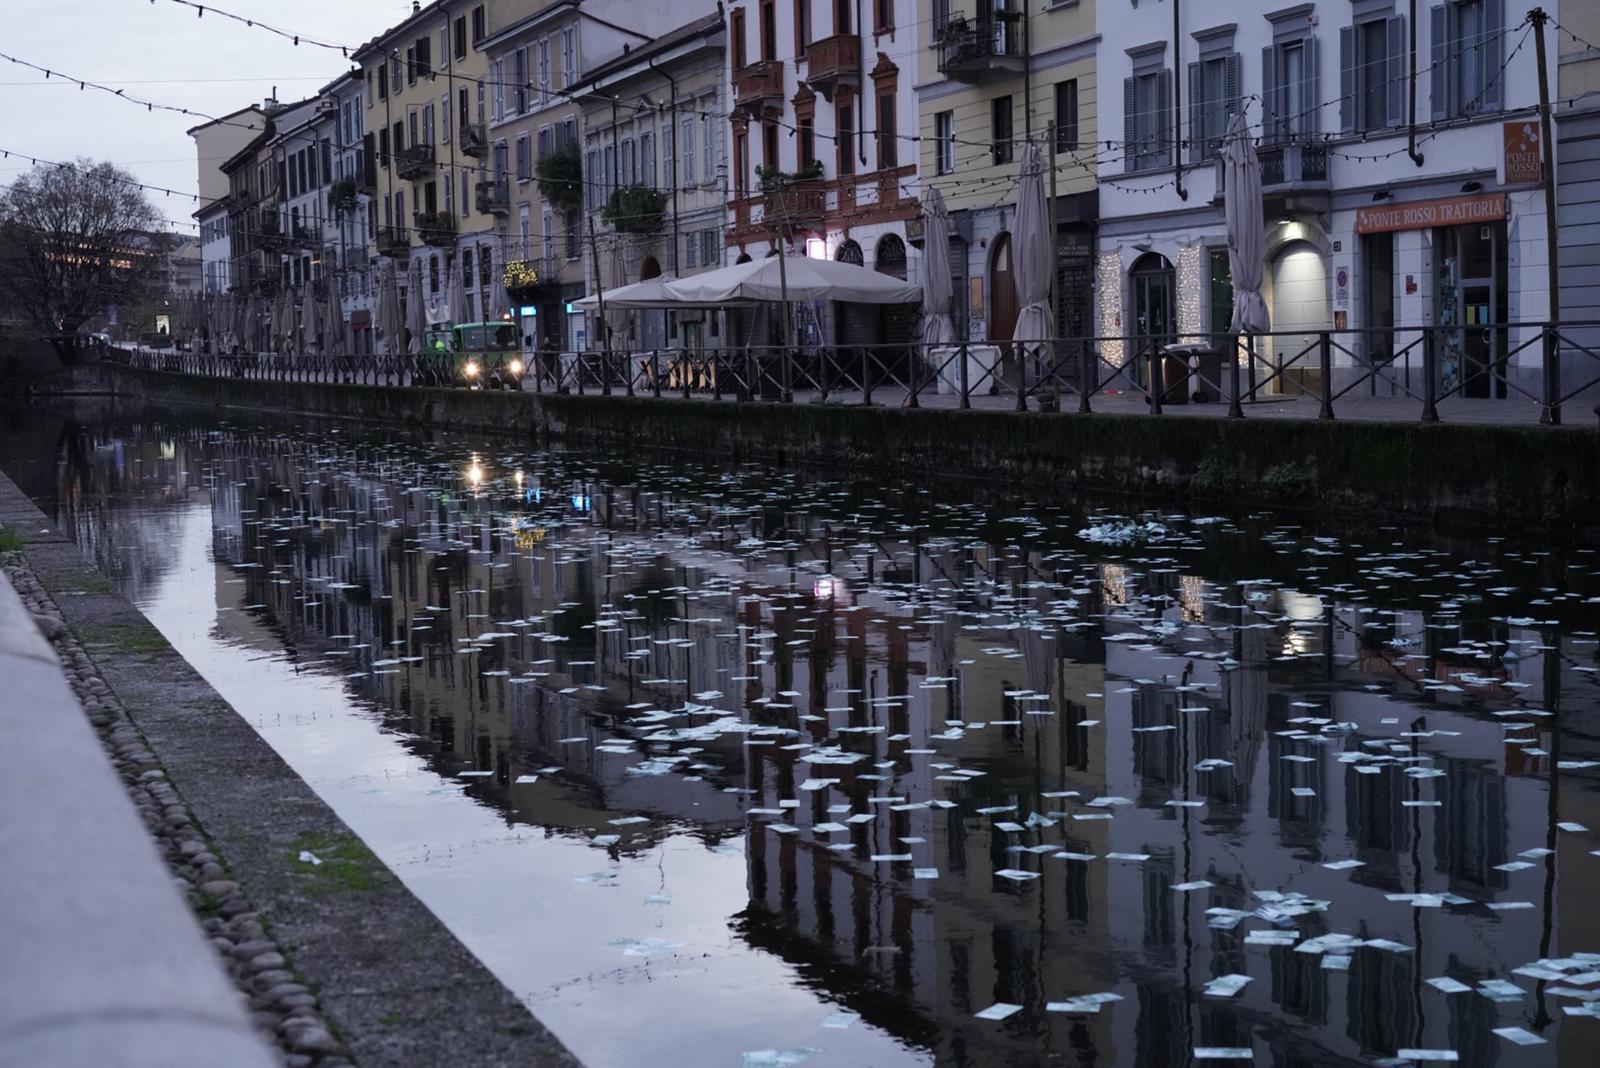 Stamattina a Milano il Naviglio era pieno di soldi falsi